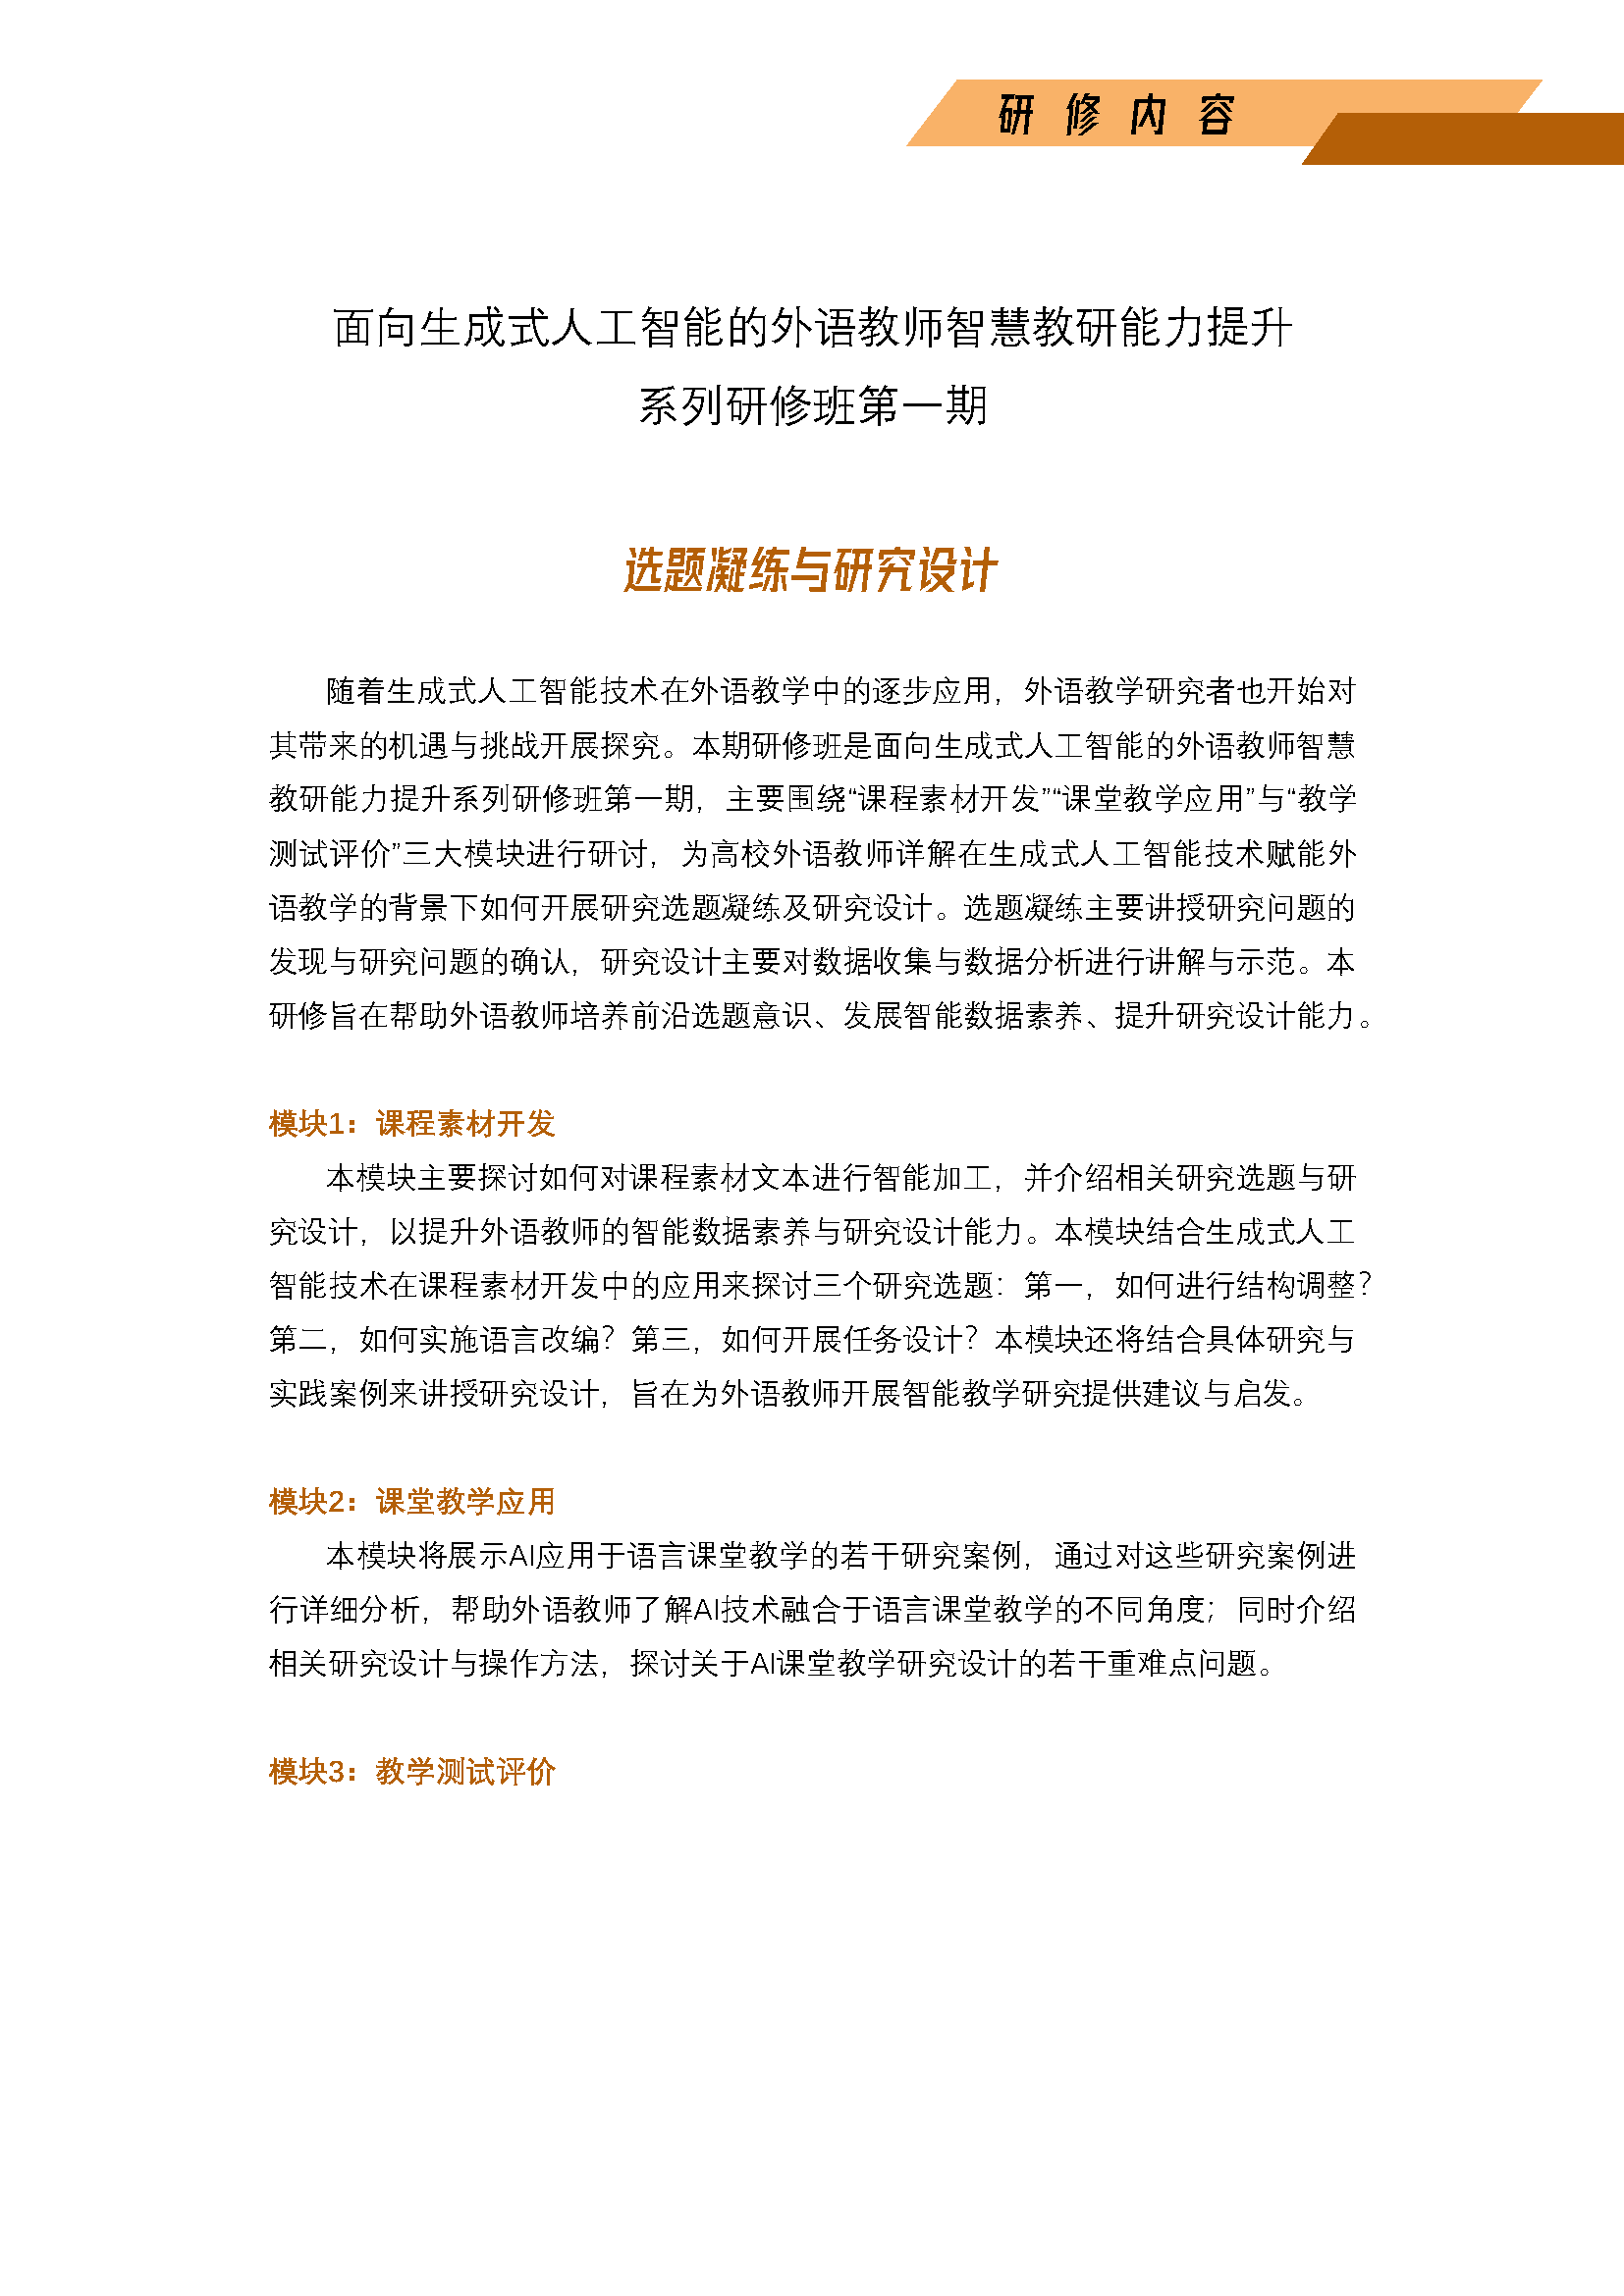 广州举办--面向AIGC的智慧教研能力提升系列研修班第一期_页面_3.png